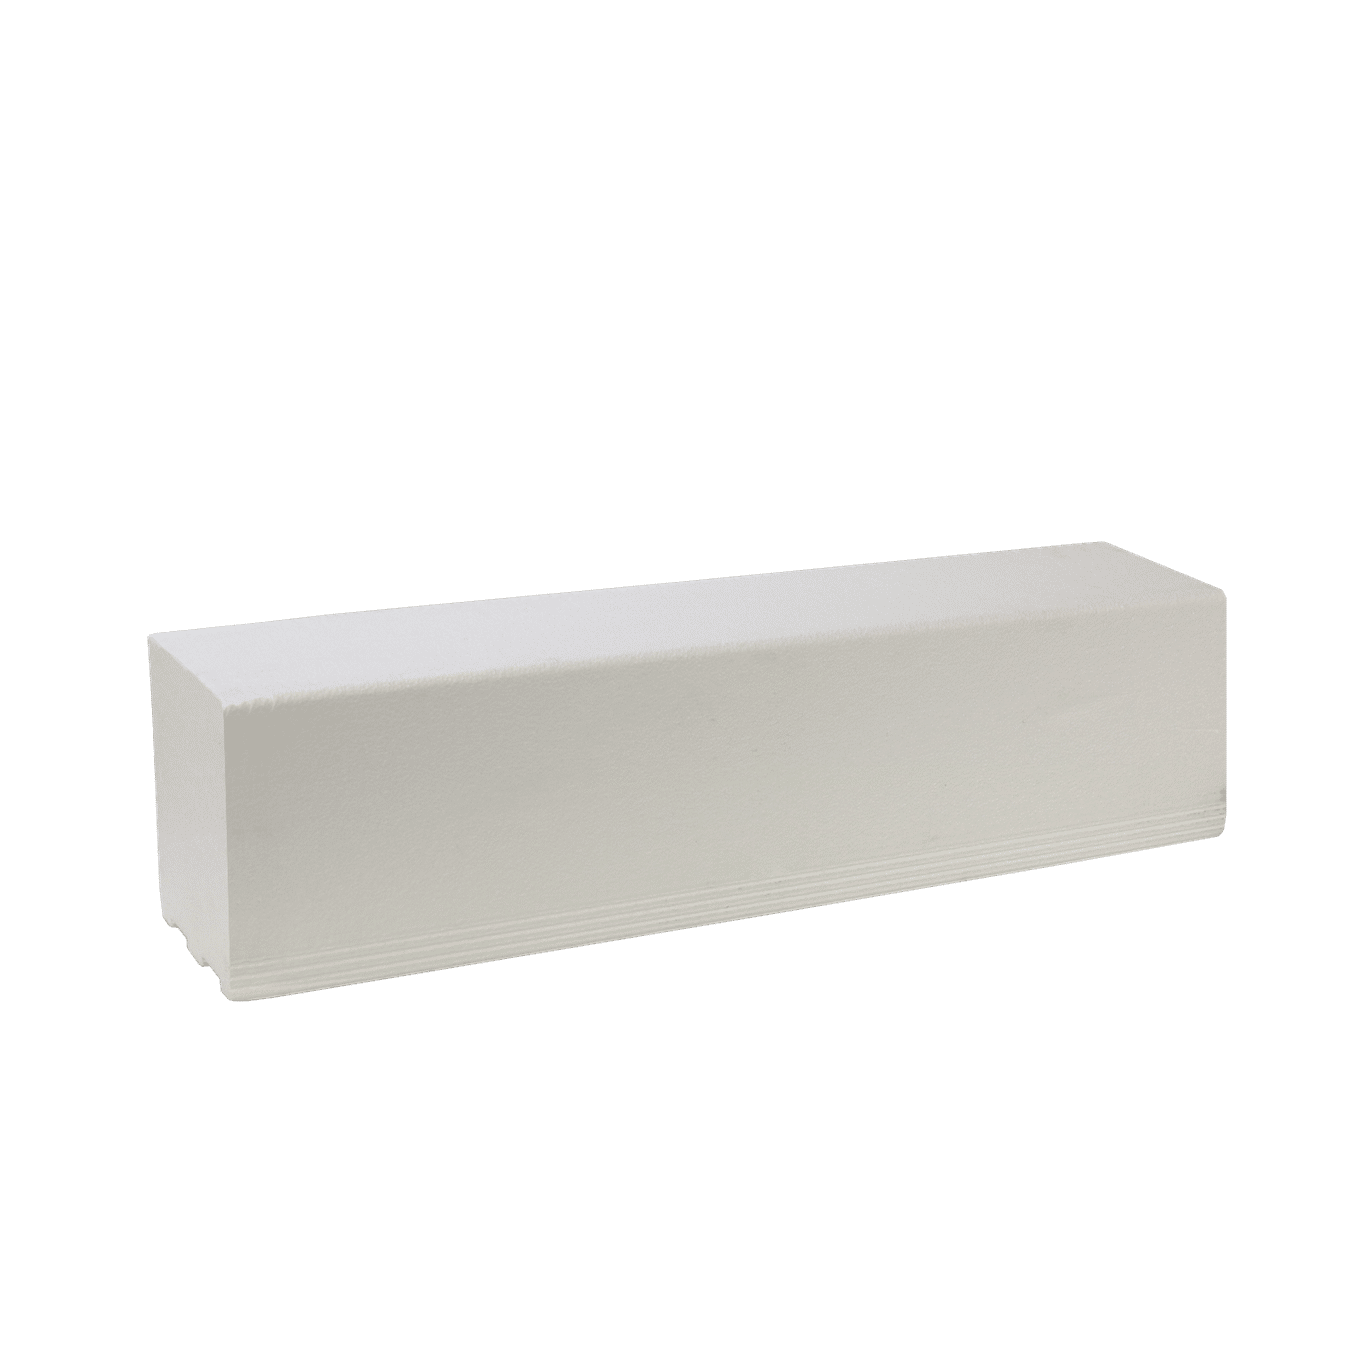 Pro GEN II Solid Polystyrene Shower Curb - 4' Long